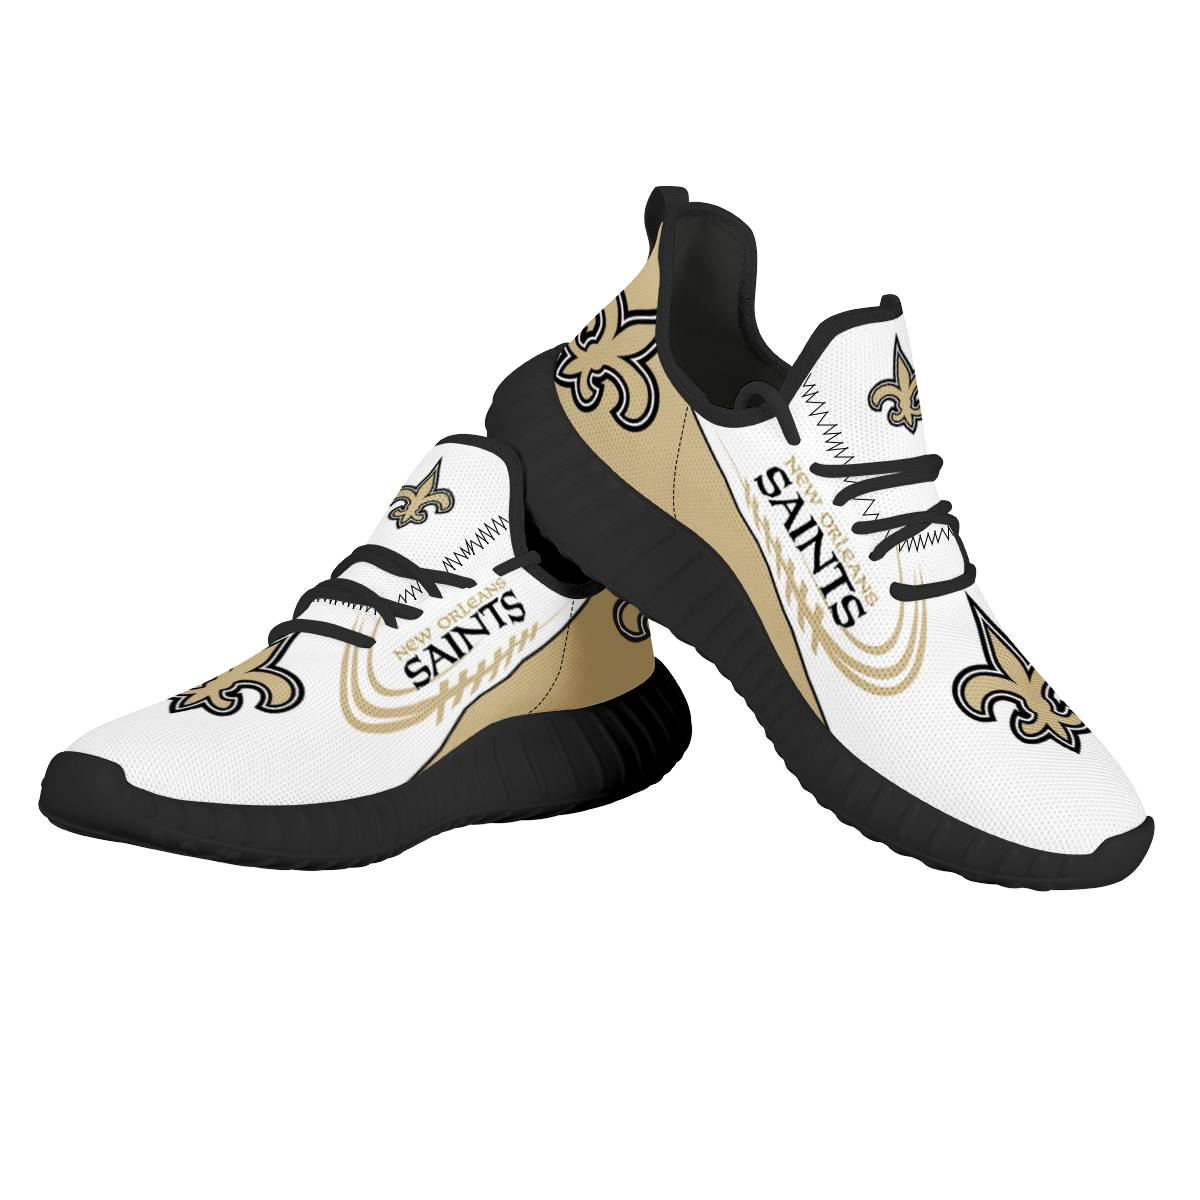 Women's NFL New Orleans Saints Mesh Knit Sneakers/Shoes 006